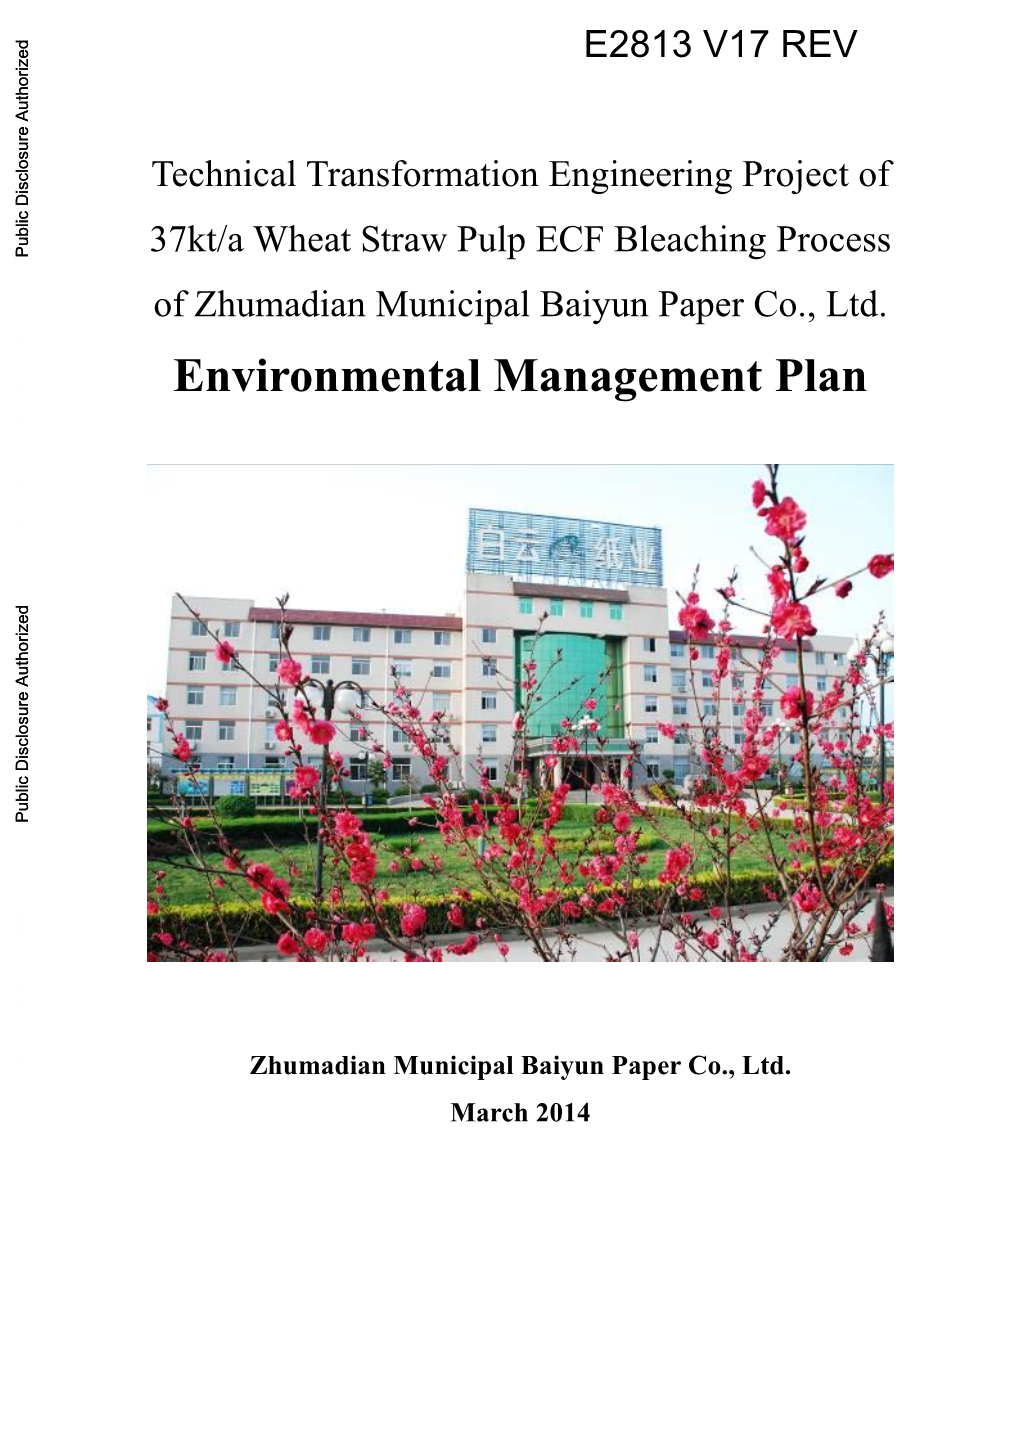 Environmental Management Plan Zhumadian